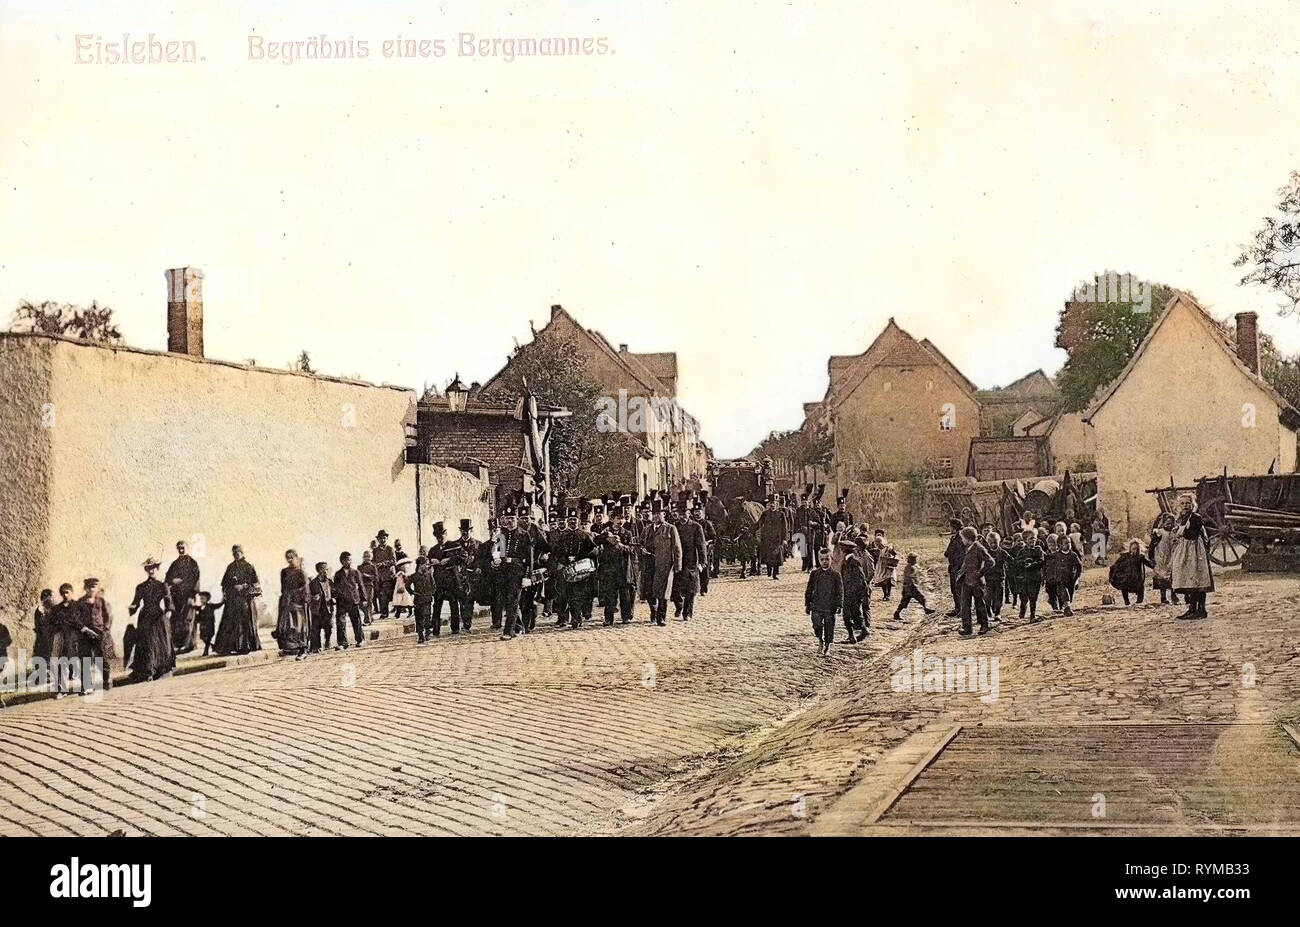 Les mineurs de l'Allemagne, les funérailles en Allemagne, l'histoire de Bordeaux, 1905, la Saxe-Anhalt, Bordeaux, Begräbnis von Bergmannes Banque D'Images